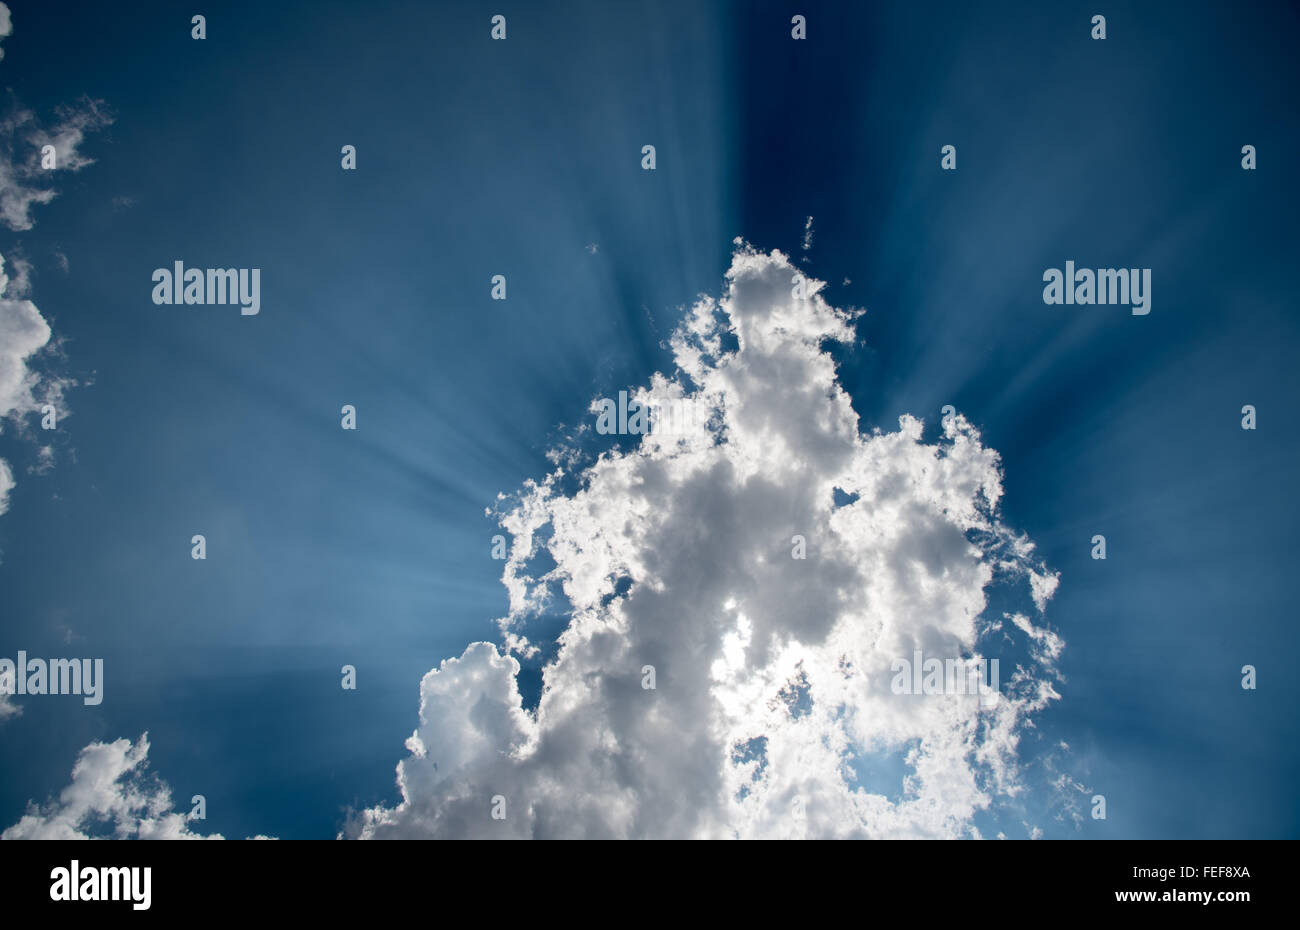 Sonnenstrahlen hinter weißen Cumulus-Wolken am blauen Himmel. Zeigen Sie ein neues Leben oder Himmel und Zukunft geboren. Stockfoto